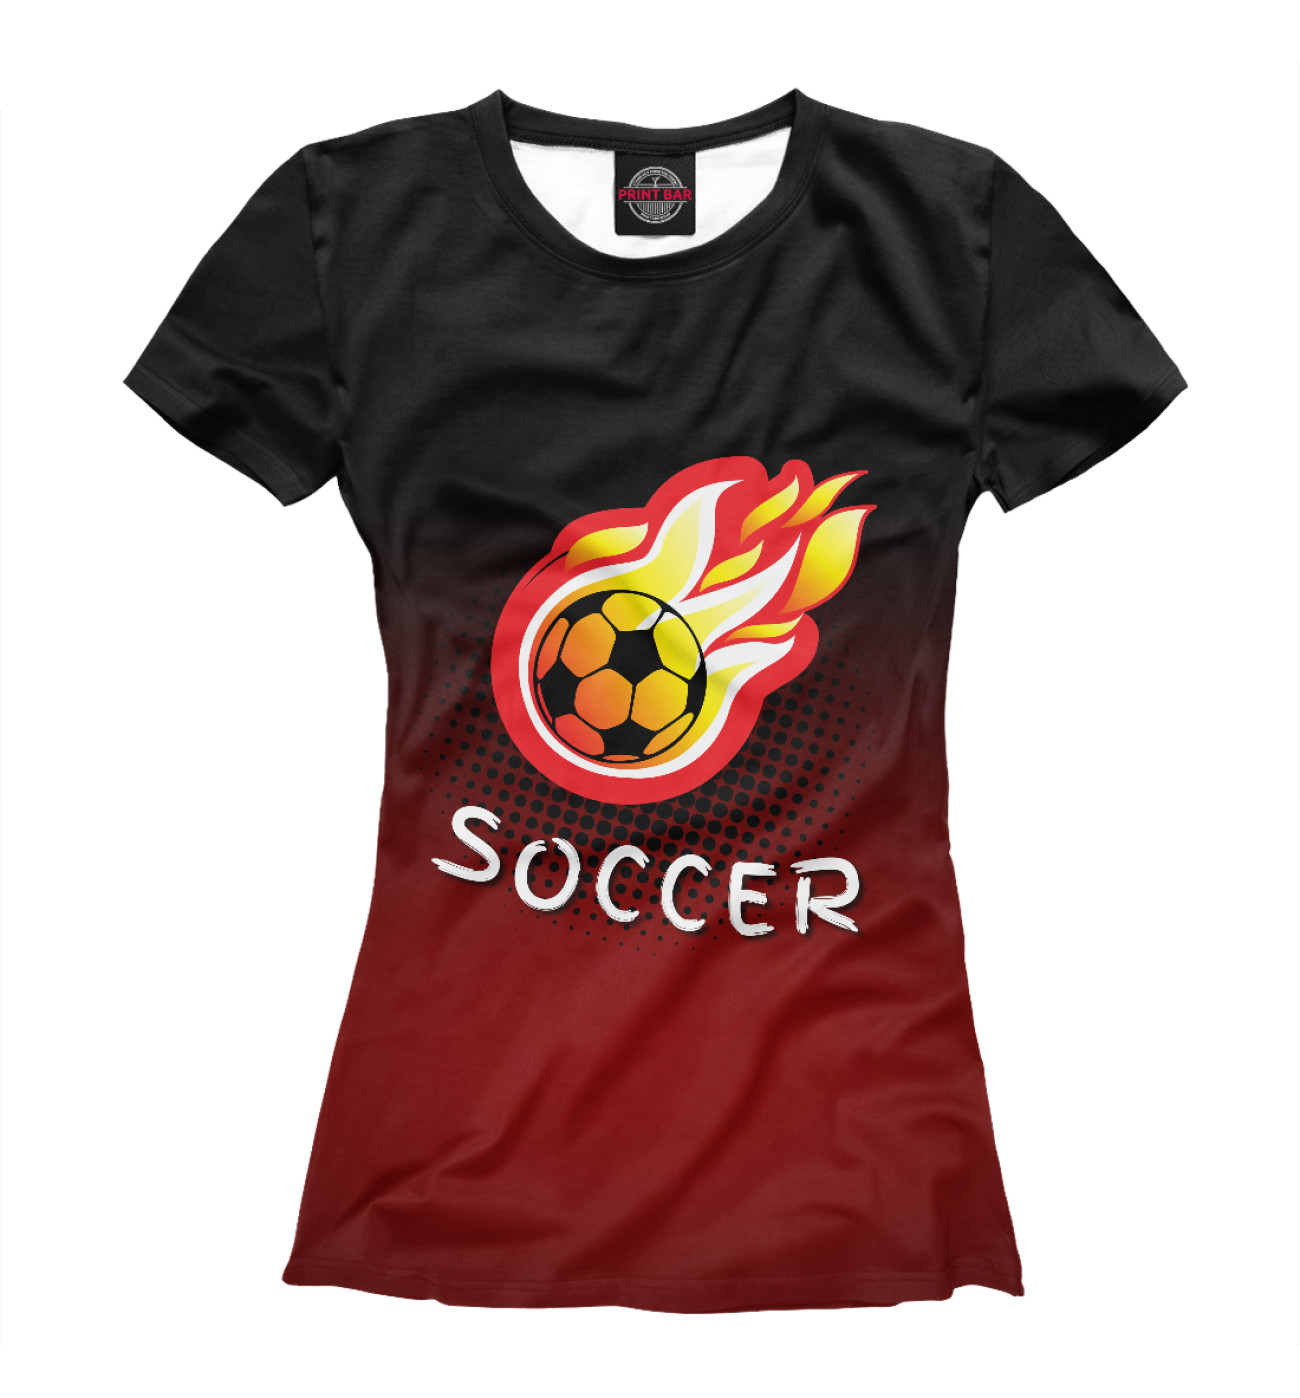 Женская Футболка Soccer, артикул: FTO-841681-fut-1